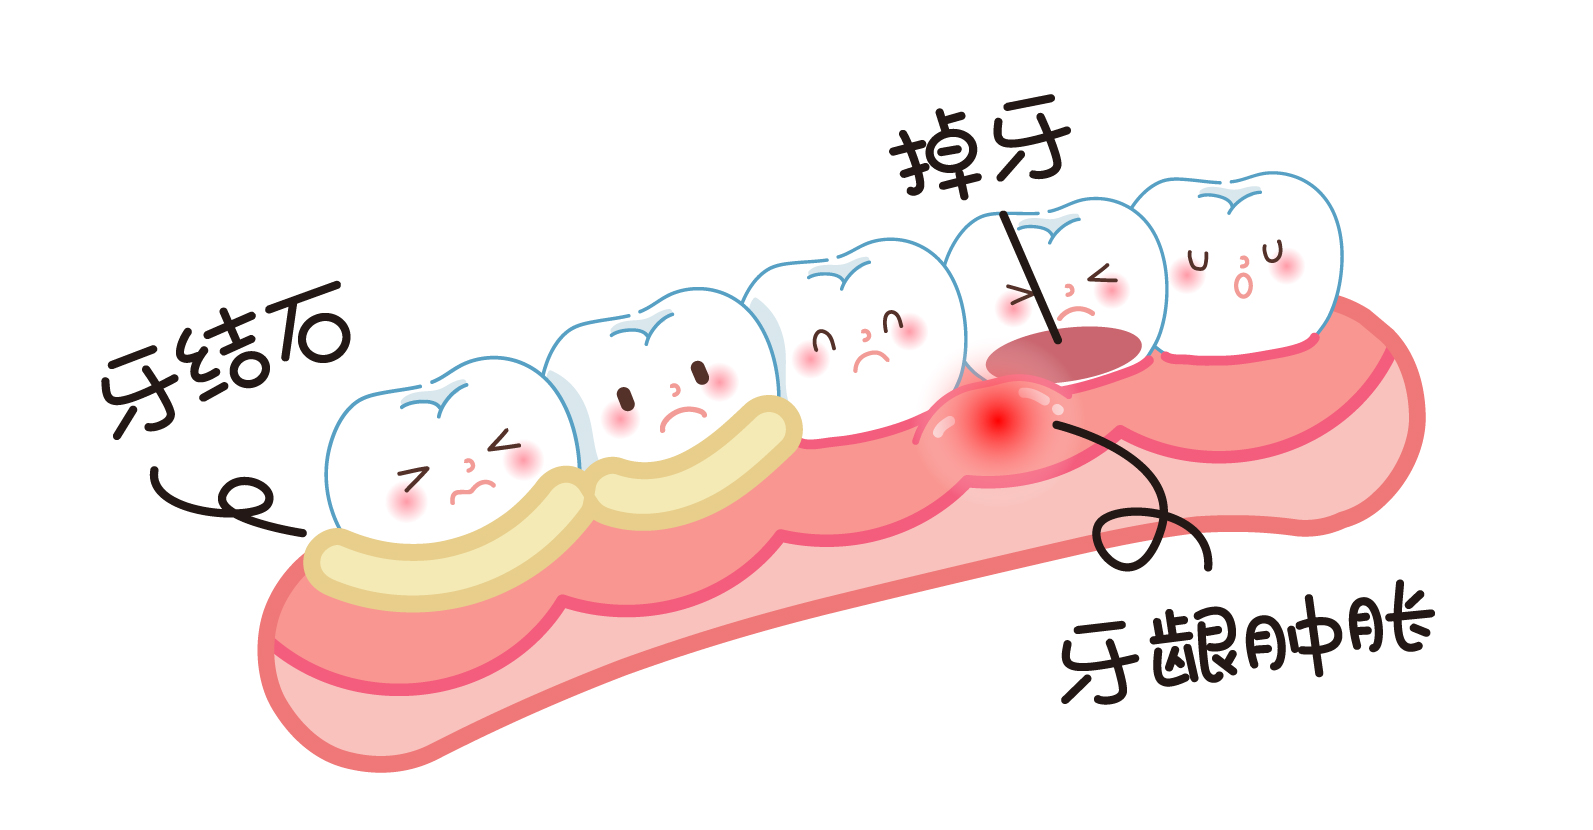 老妈牙龈萎缩，牙根暴露，是否可以洗牙？